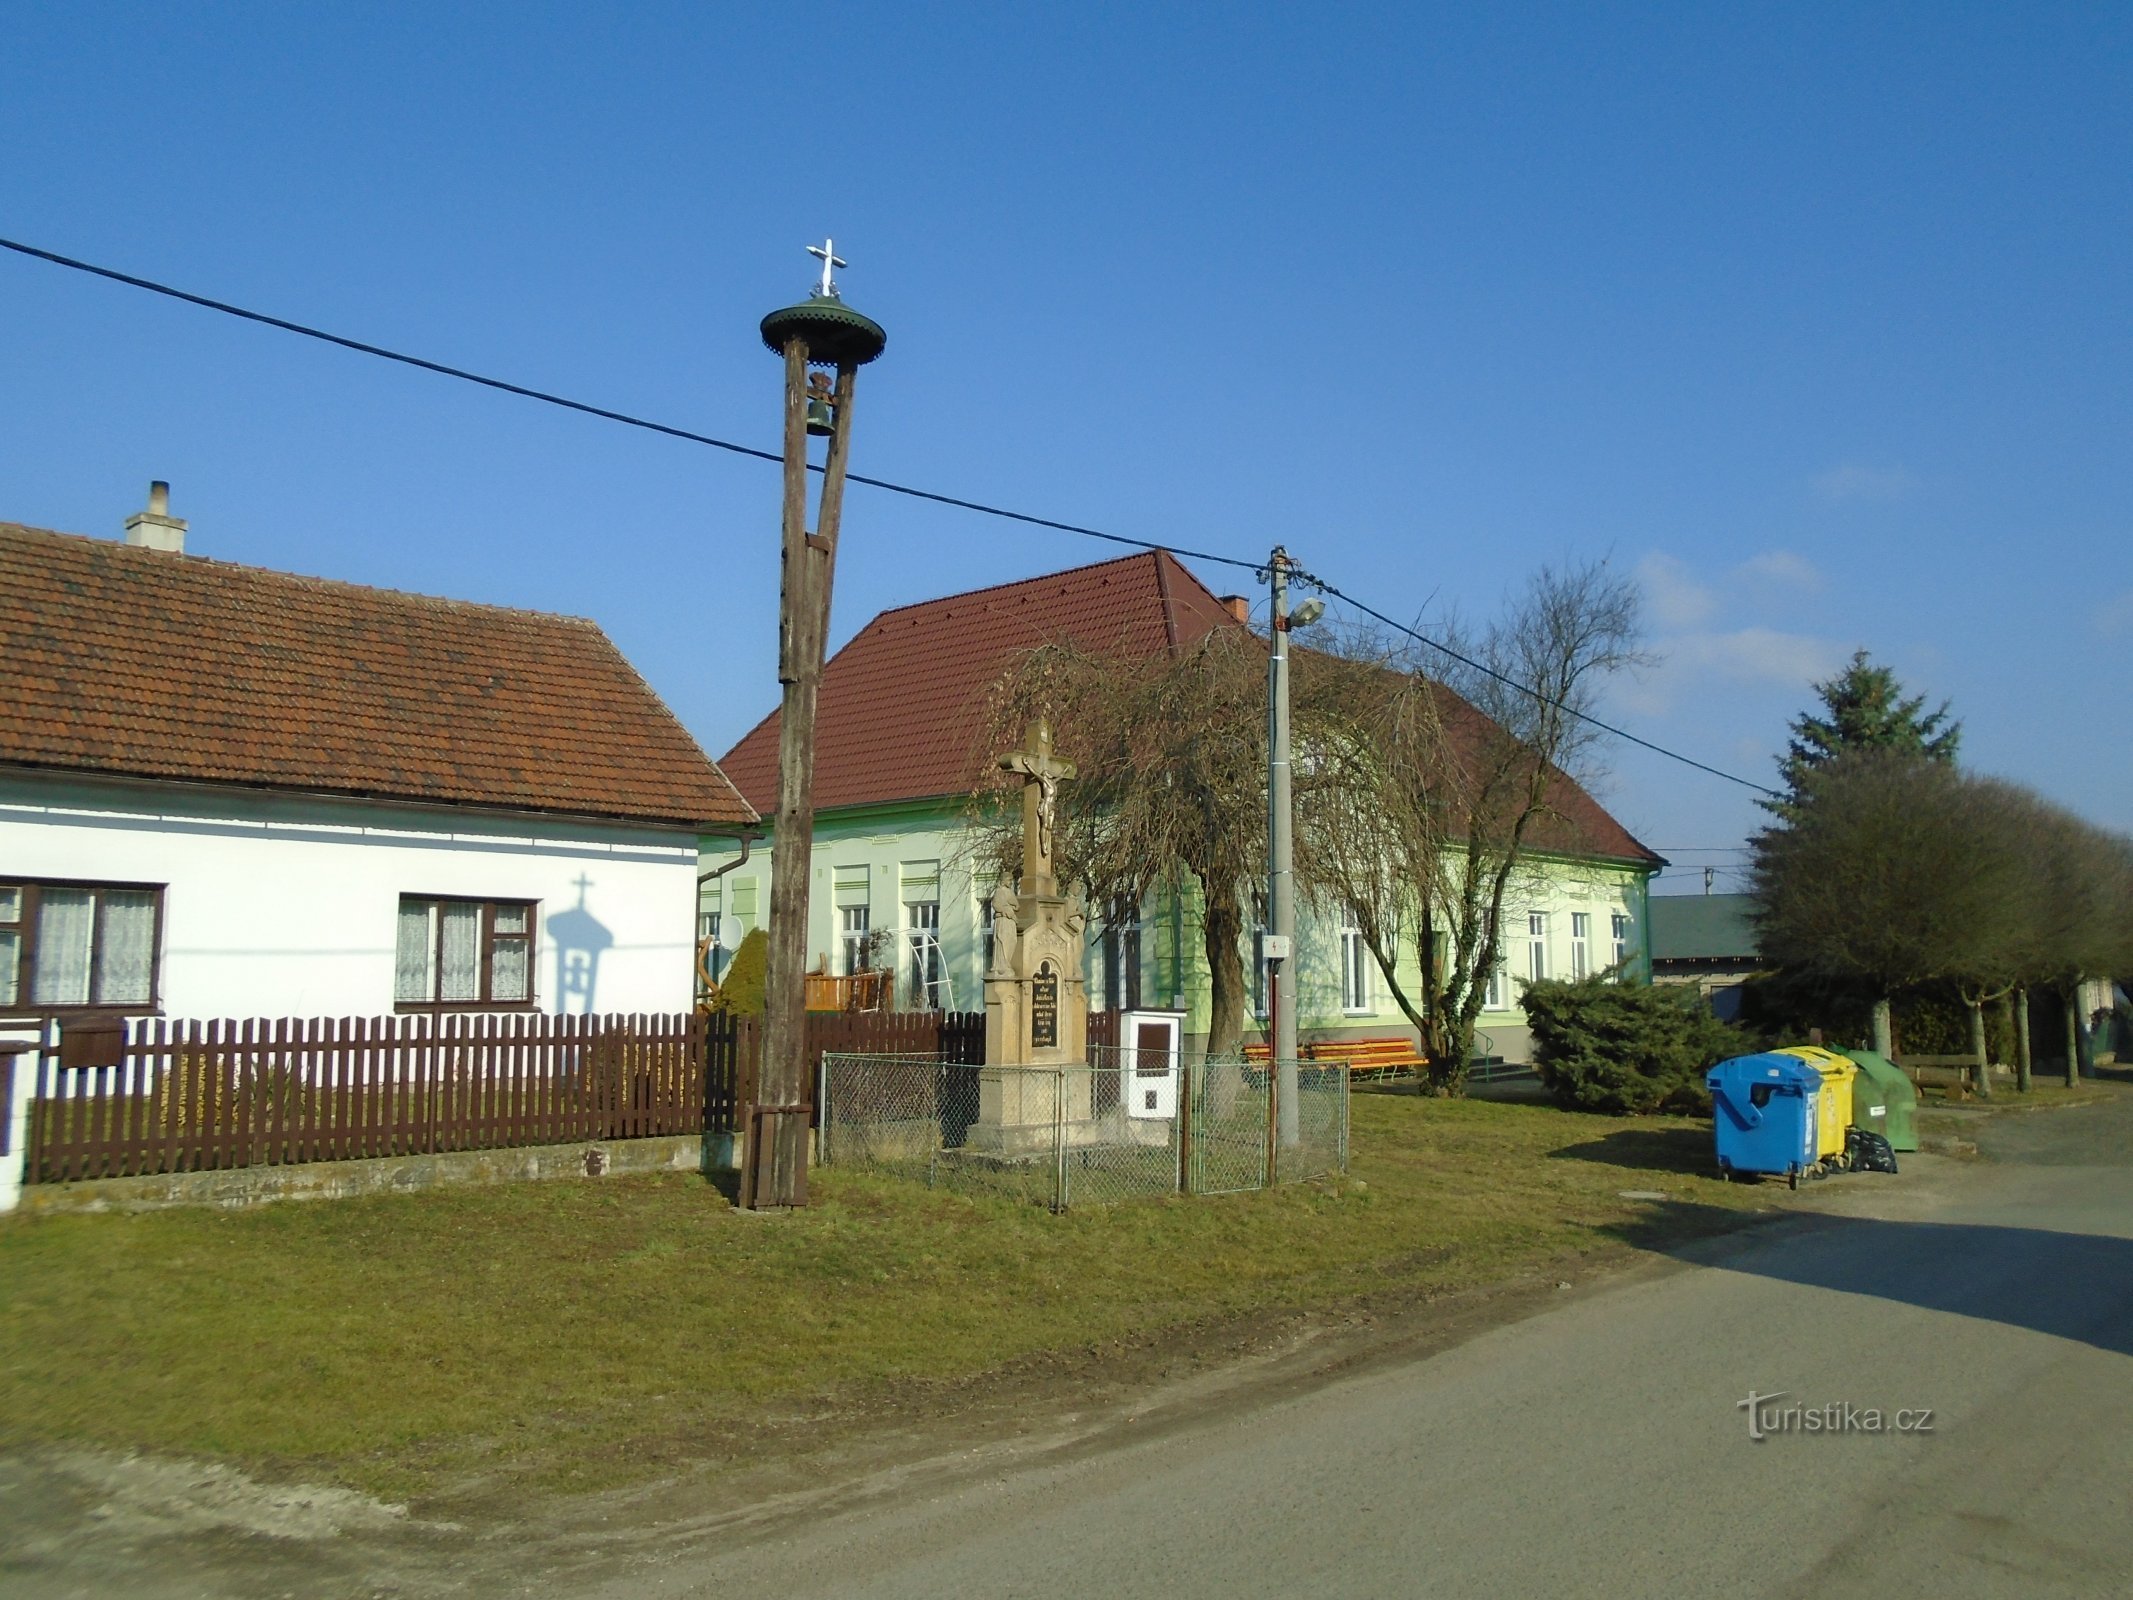 钟楼和十字架 (Bukovina)